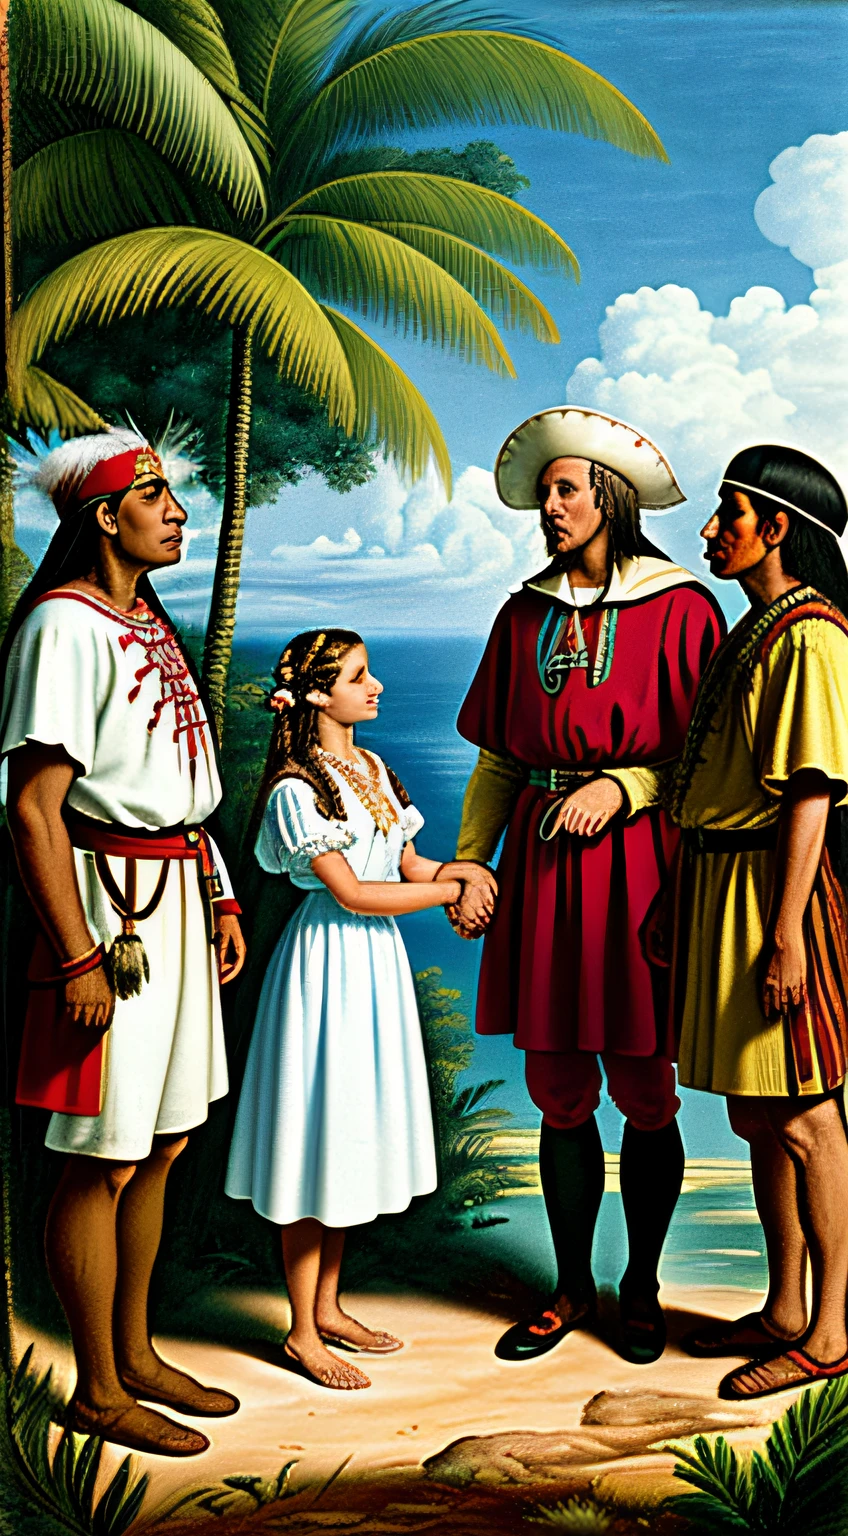 探検家の衣装を着たクリストファー・コロンブスの歴史的なシーン, 伝統的な衣装を着たネイティブアメリカンに会う, 緑豊かなカリブ海の風景の中で, 相互の好奇心と尊敬, フォトリアリスティックスタイル.